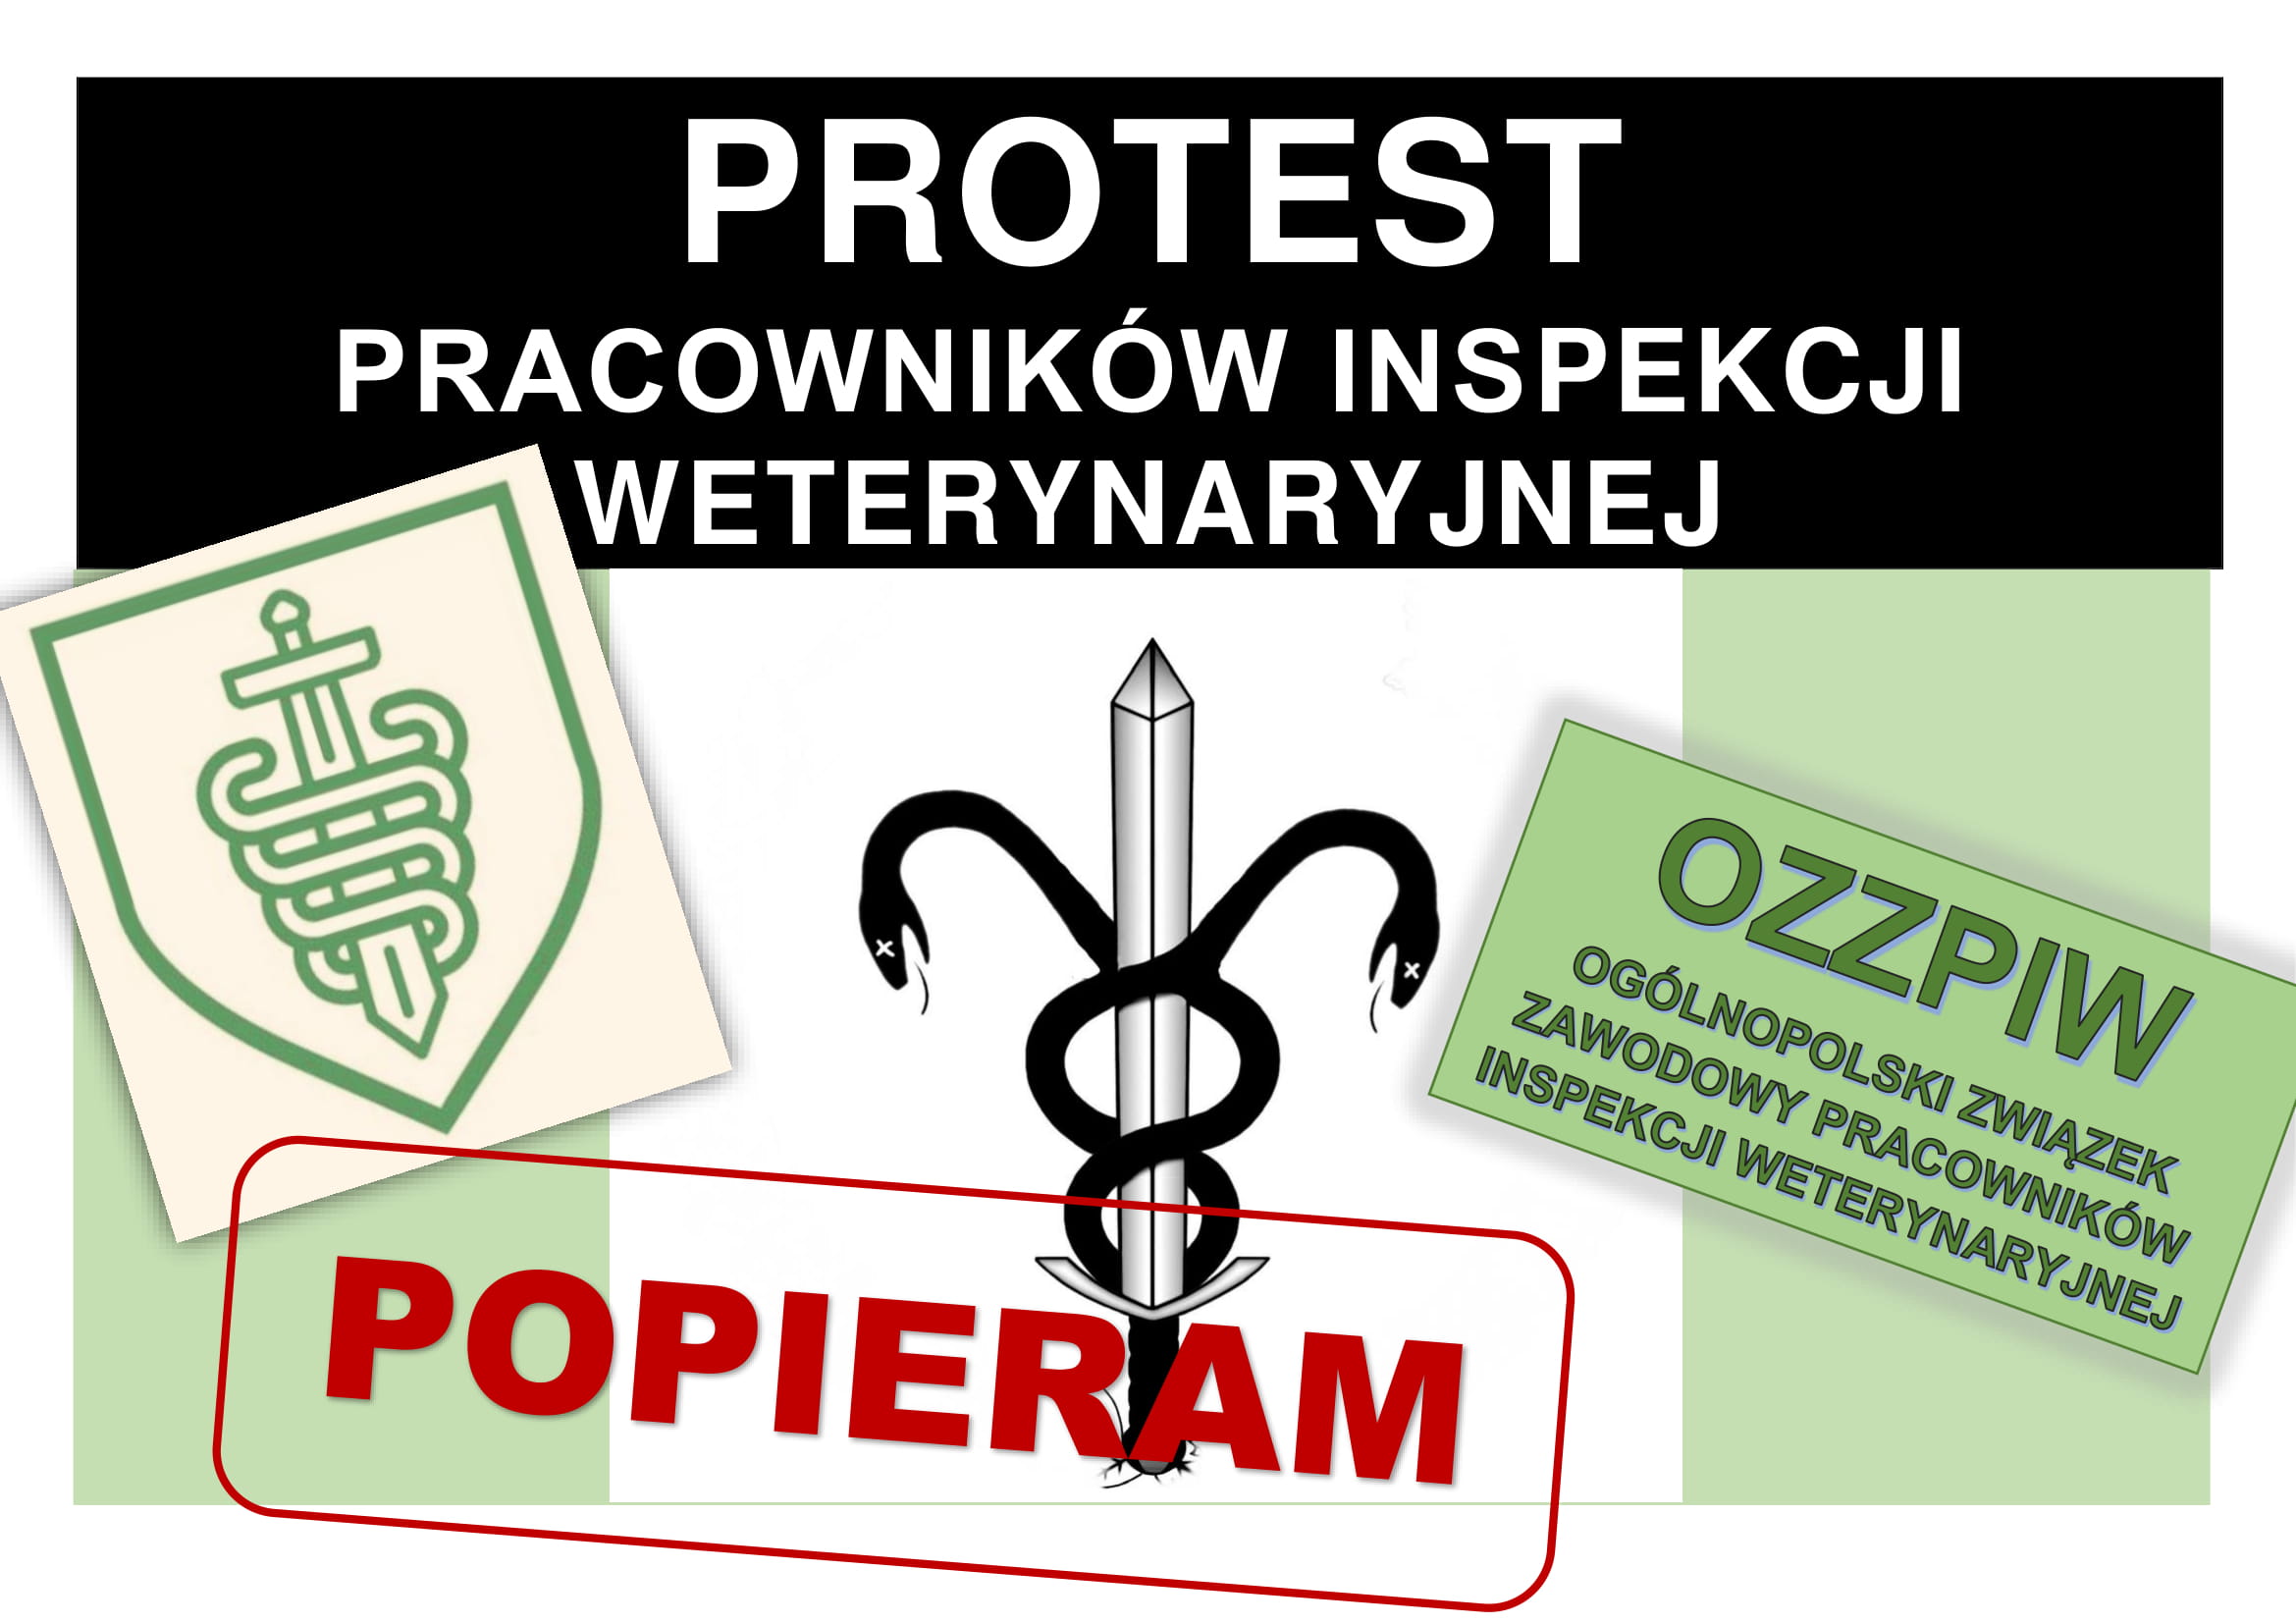 Protest Pracowników IW – komunikat nr 17 – Walny Zjazd OZZPIW